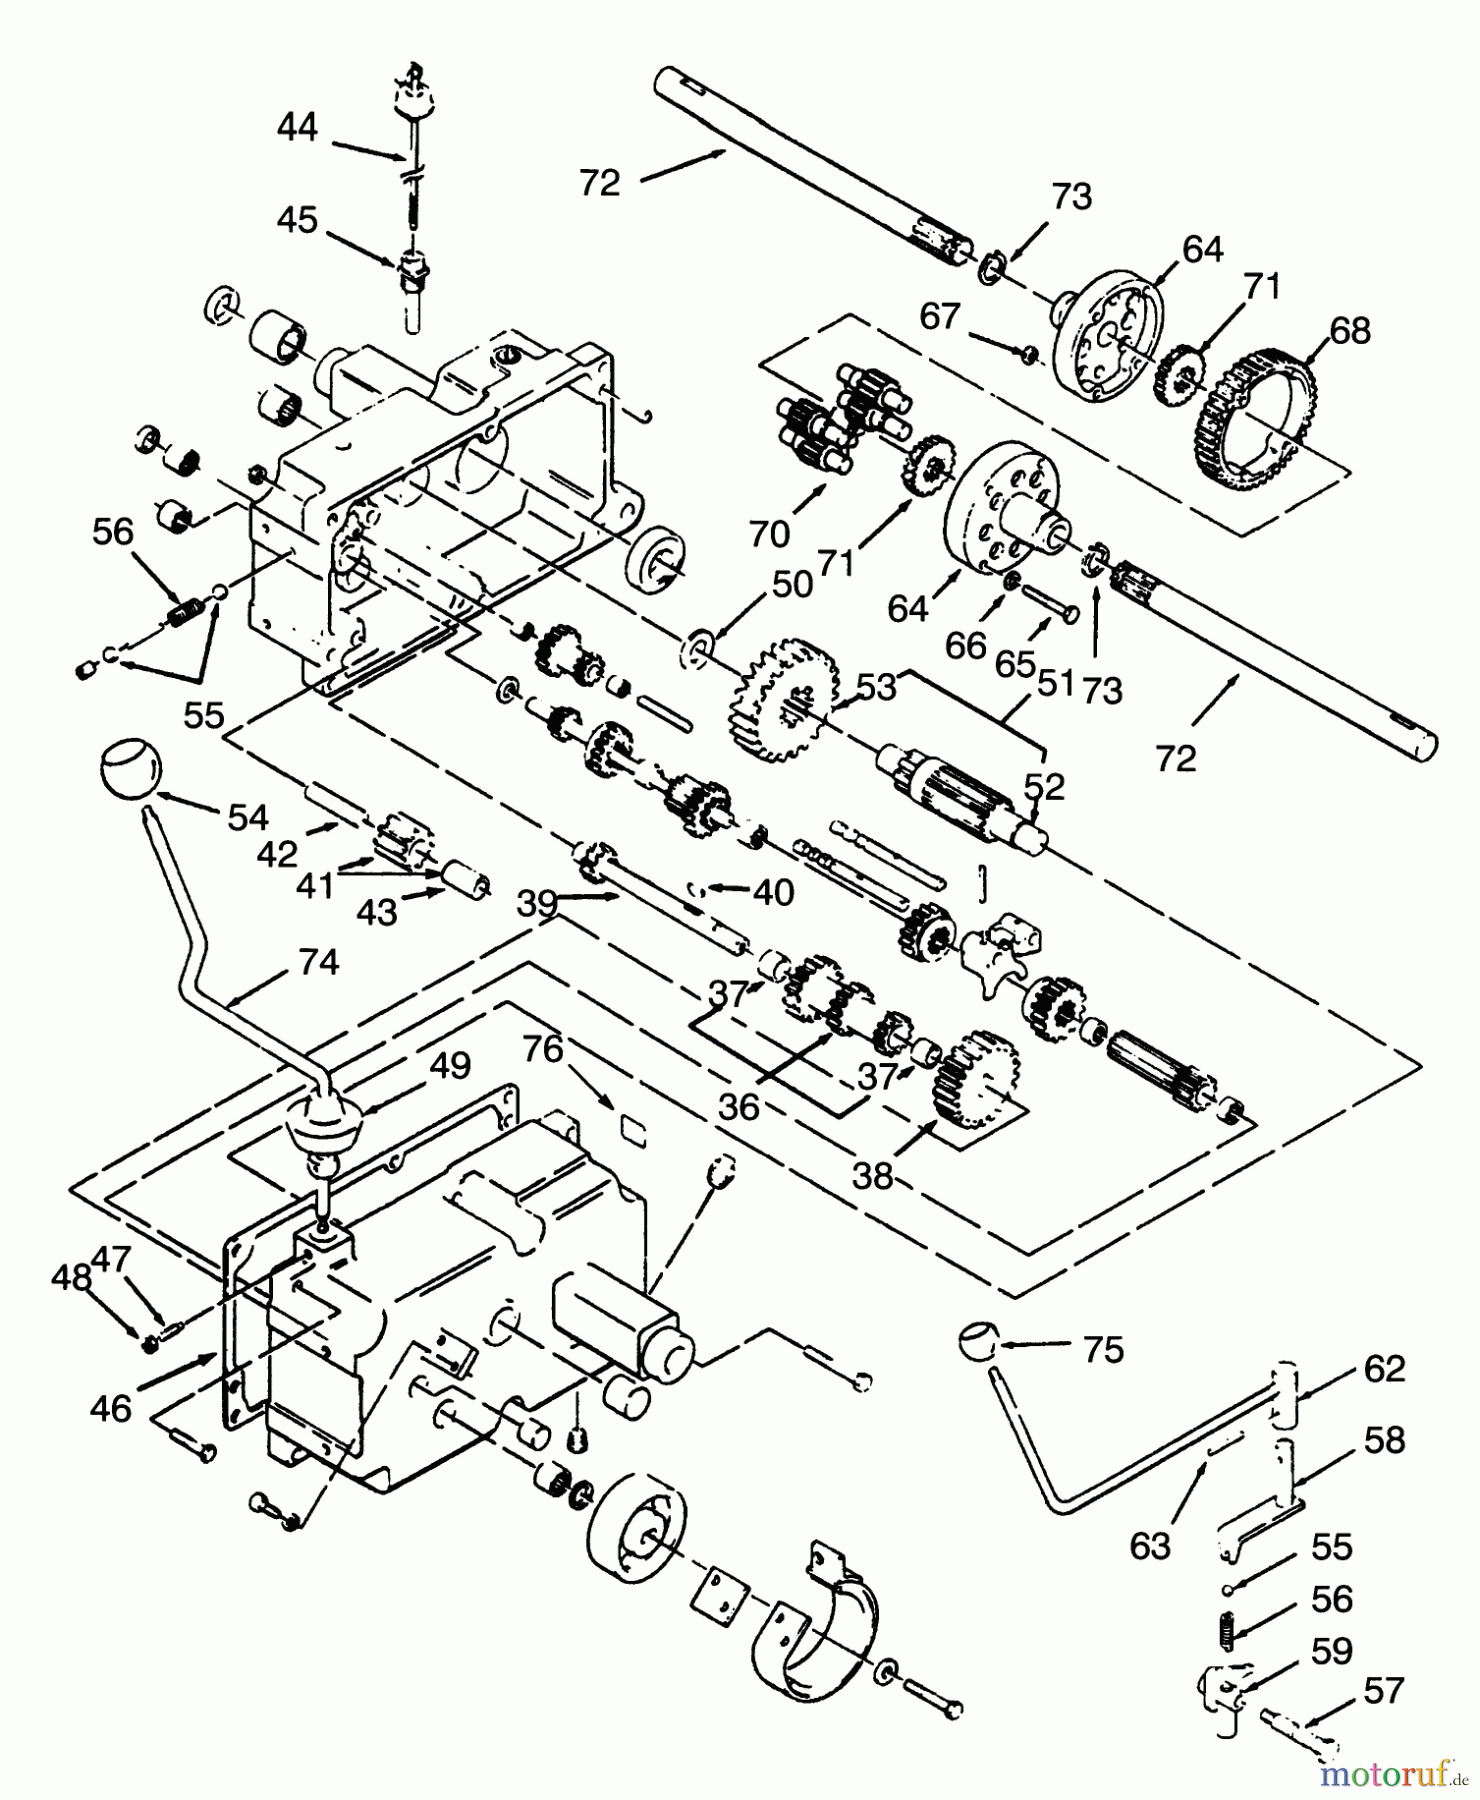  Toro Neu Mowers, Lawn & Garden Tractor Seite 1 73320 (310-8) - Toro 310-8 Garden Tractor, 1993 (3900001-3999999) TRANSMISSION 8-SPEED #2